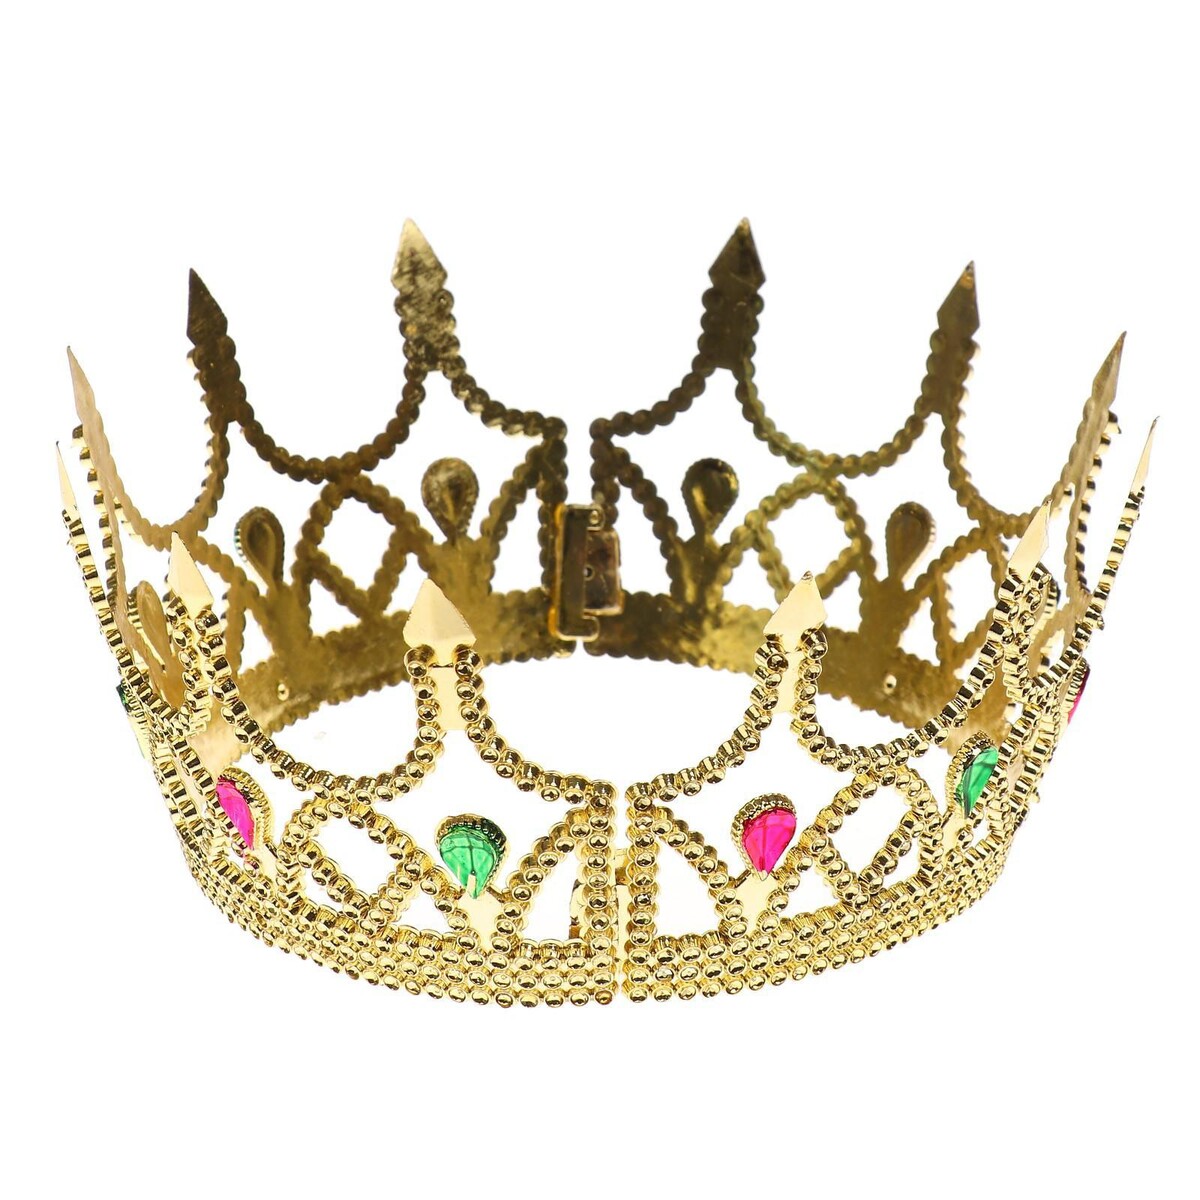 Корона принцессы золотая из 2-х частей обруч массажный d 105 см 8 частей 1 33 кг